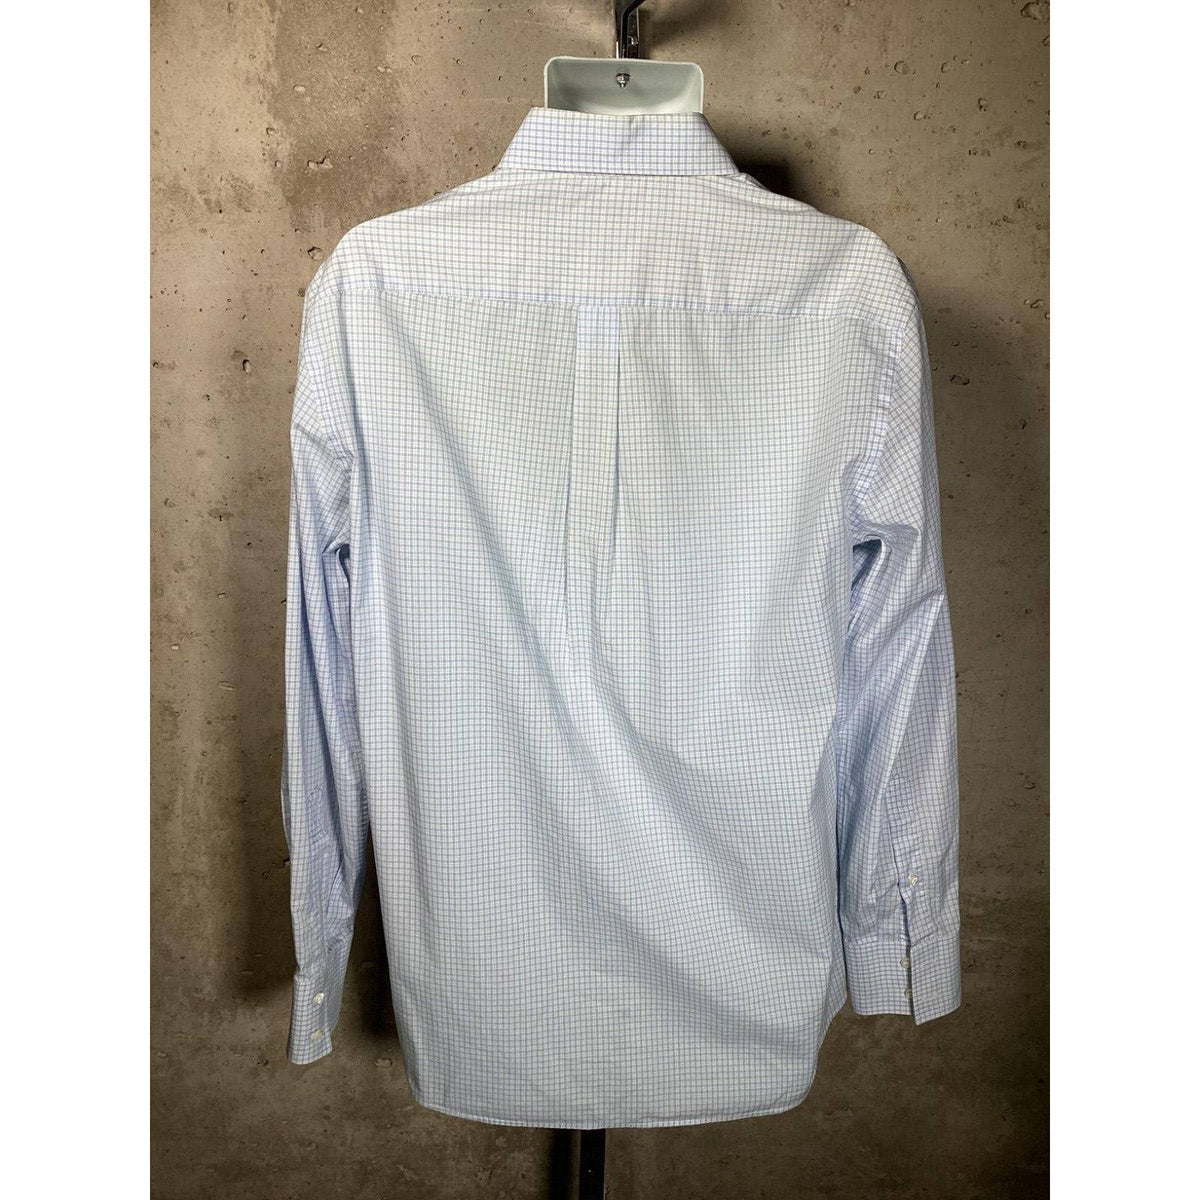 Brunello Cucinelli Men’s Blue Plaid Dress Shirt Sz. Large